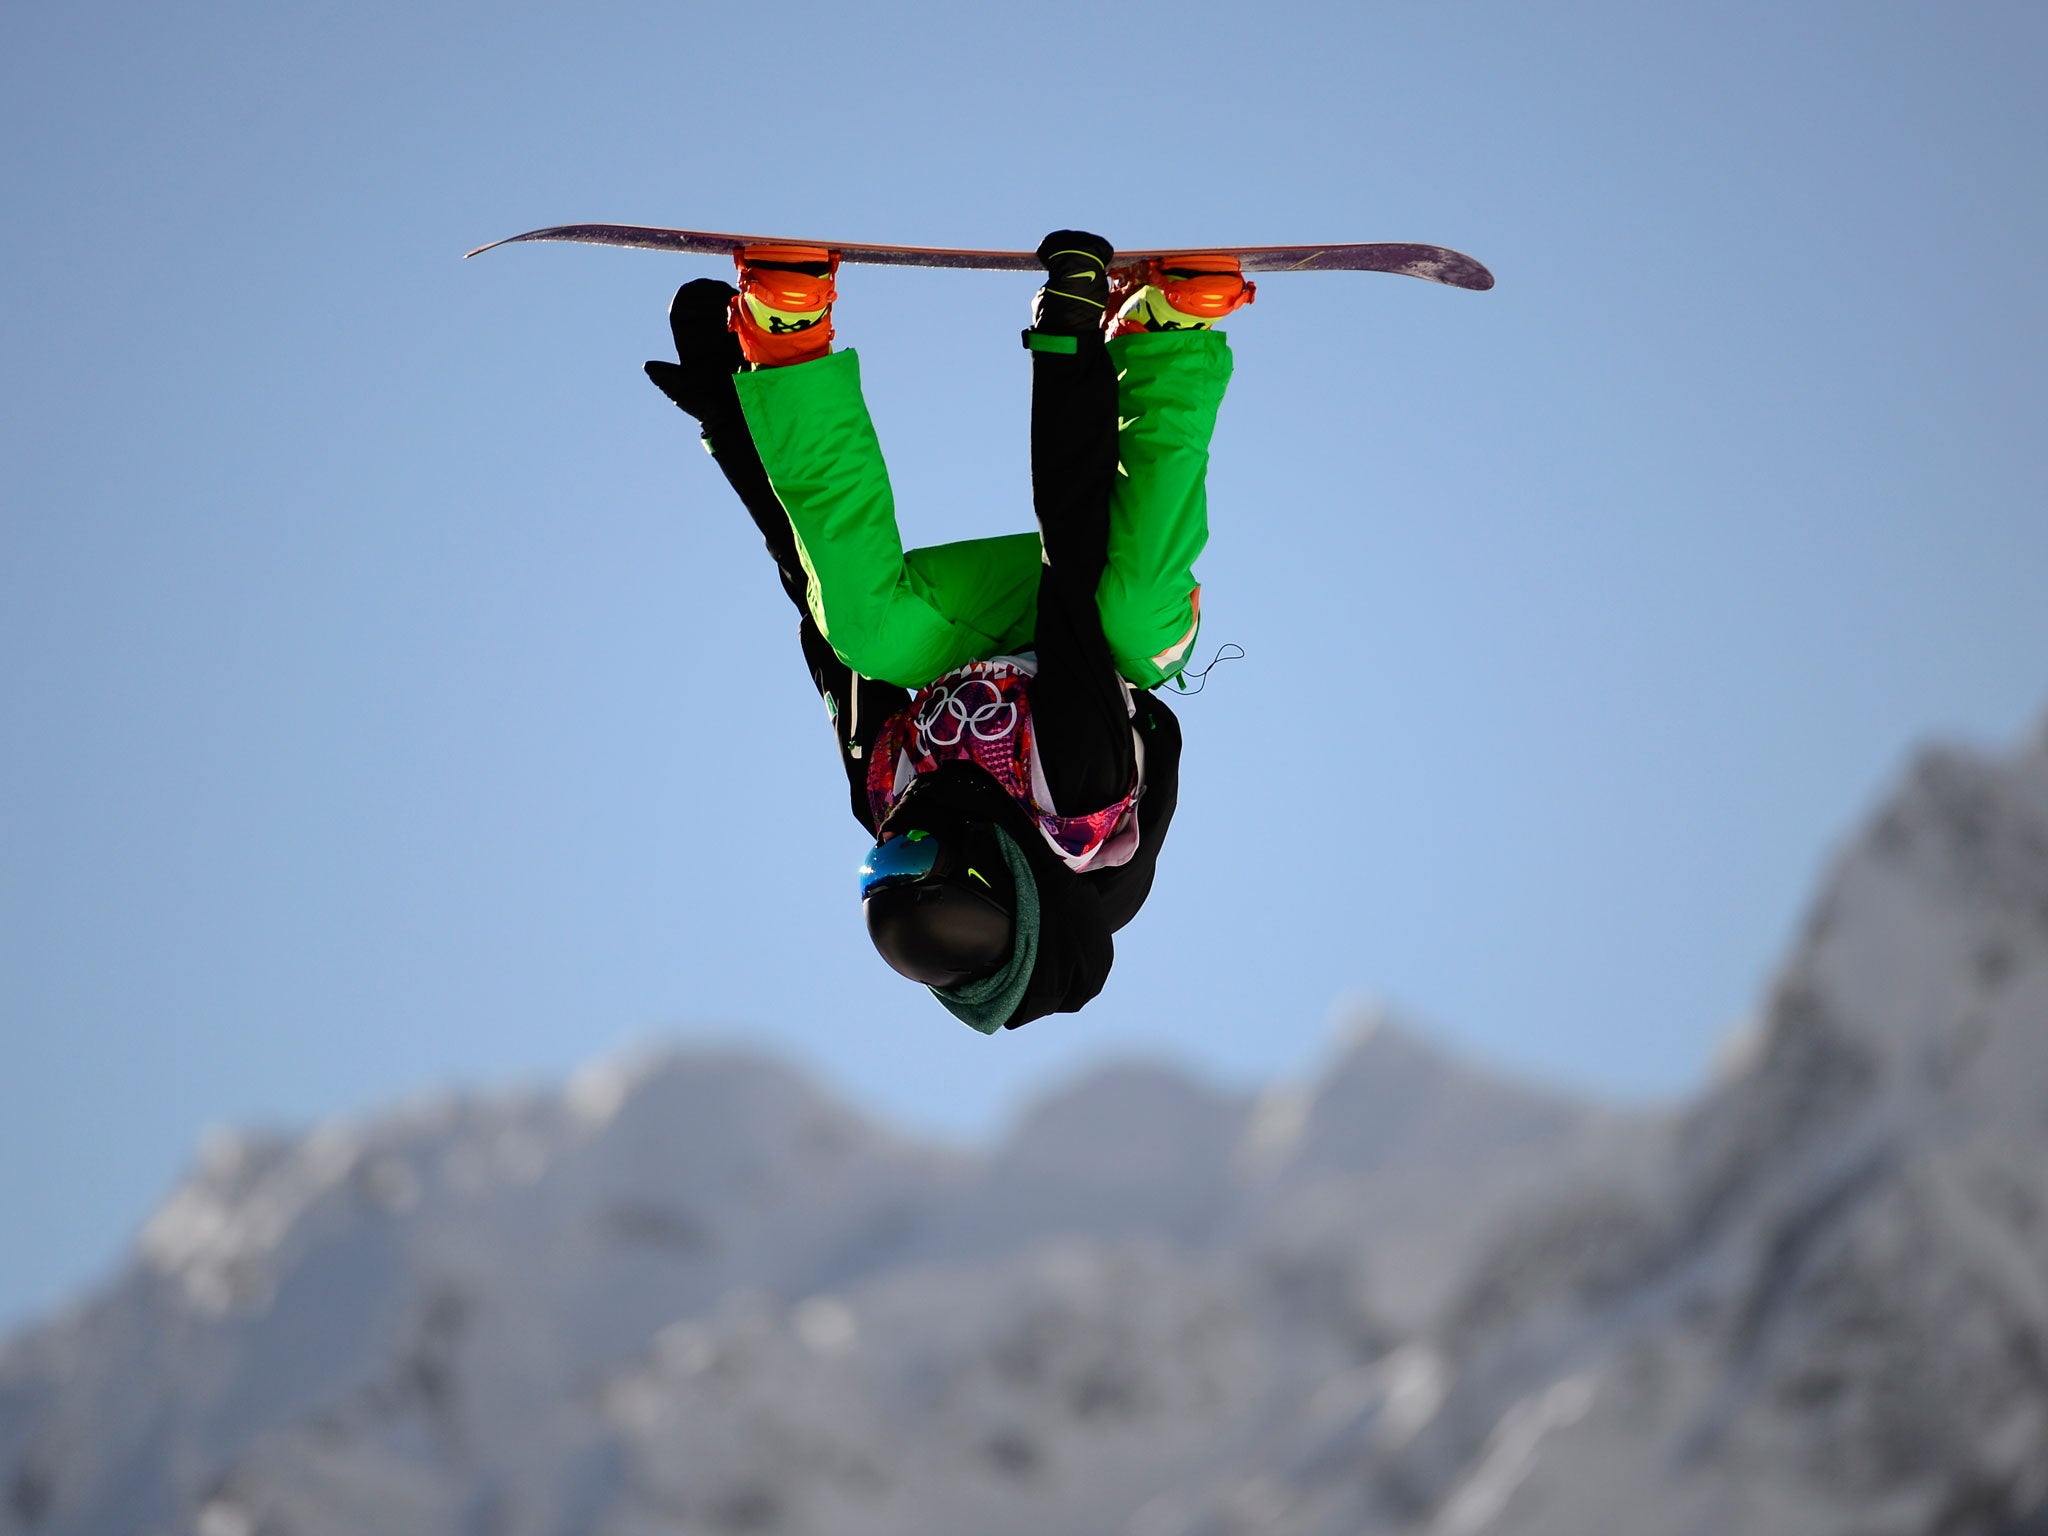 Seamus O'Connor progressed to the men's snowboard halfpipe semi-final